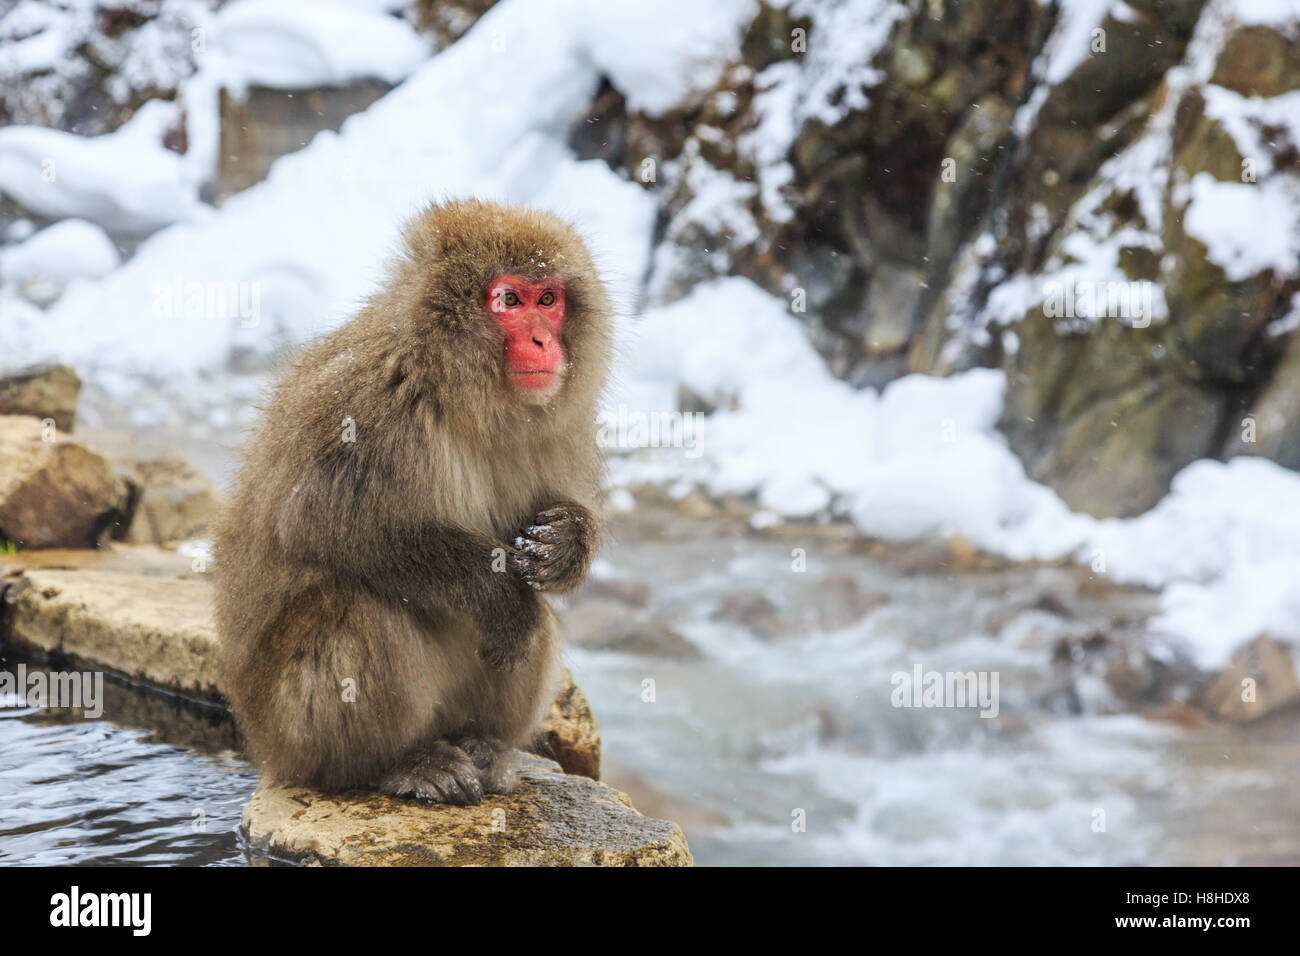 Snow monkey at a natural onsen (hot spring), located in Jigokudani Park, Yudanaka. Nagano Japan. Stock Photo